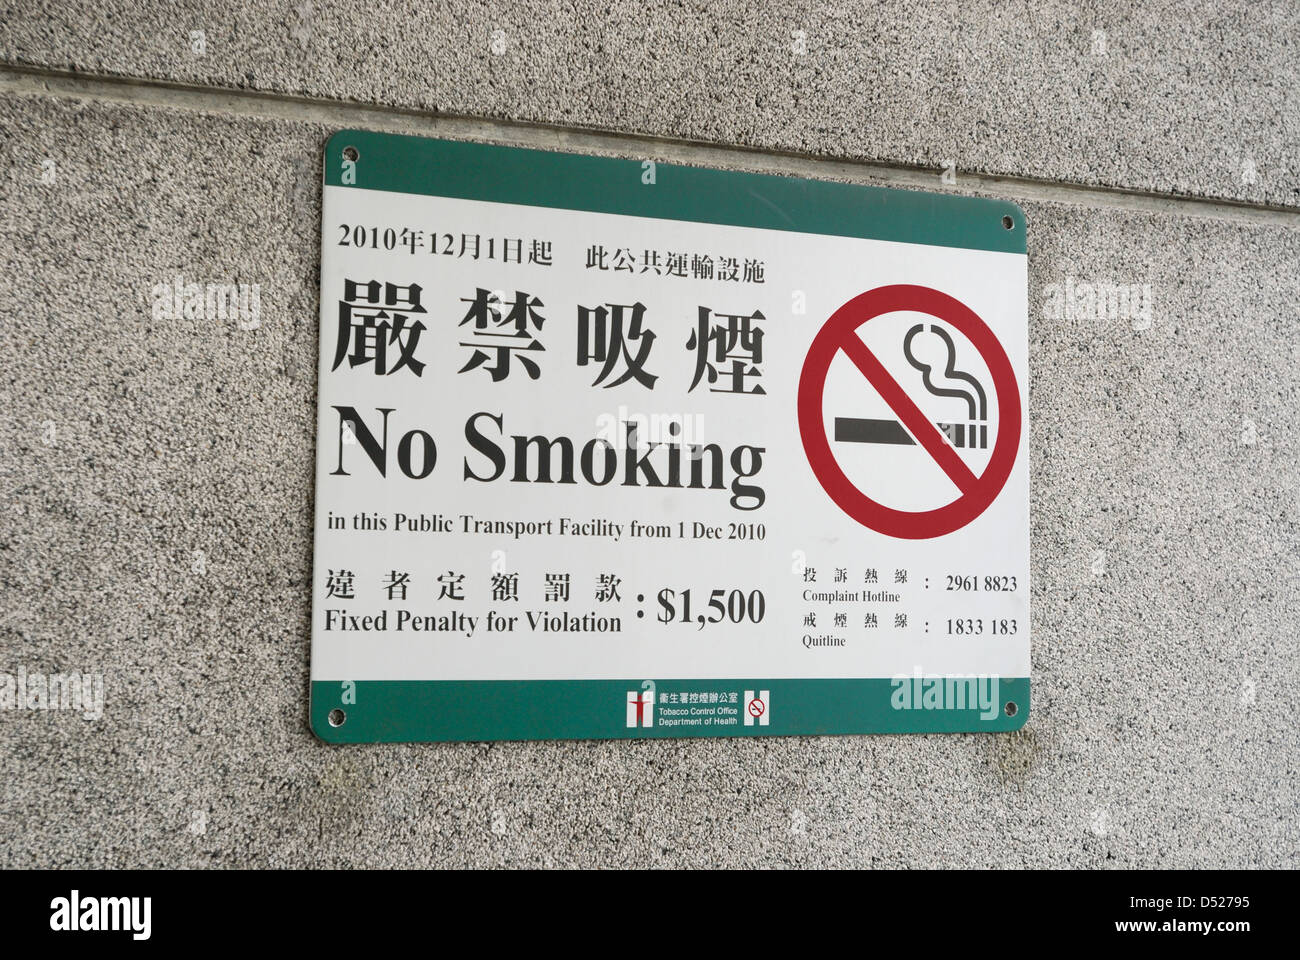 Bilingual No Smoking sign posted on wall in Hong Kong China. Stock Photo